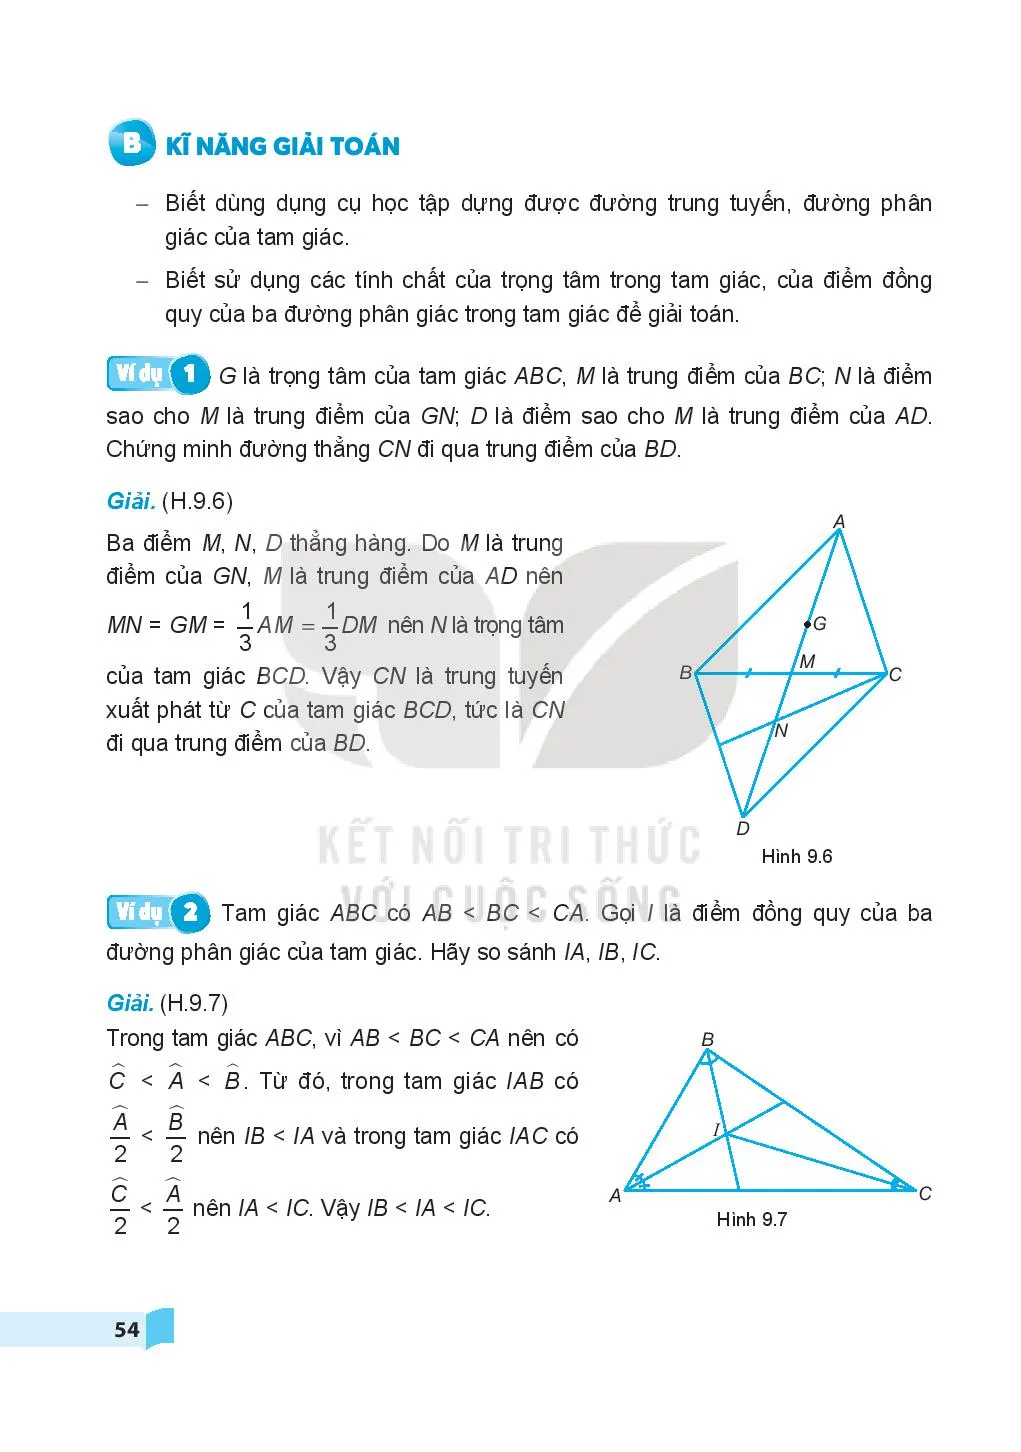 Bài 34. Sự đồng quy của ba đường trung tuyến, ba đường phân giác trong một tam giác